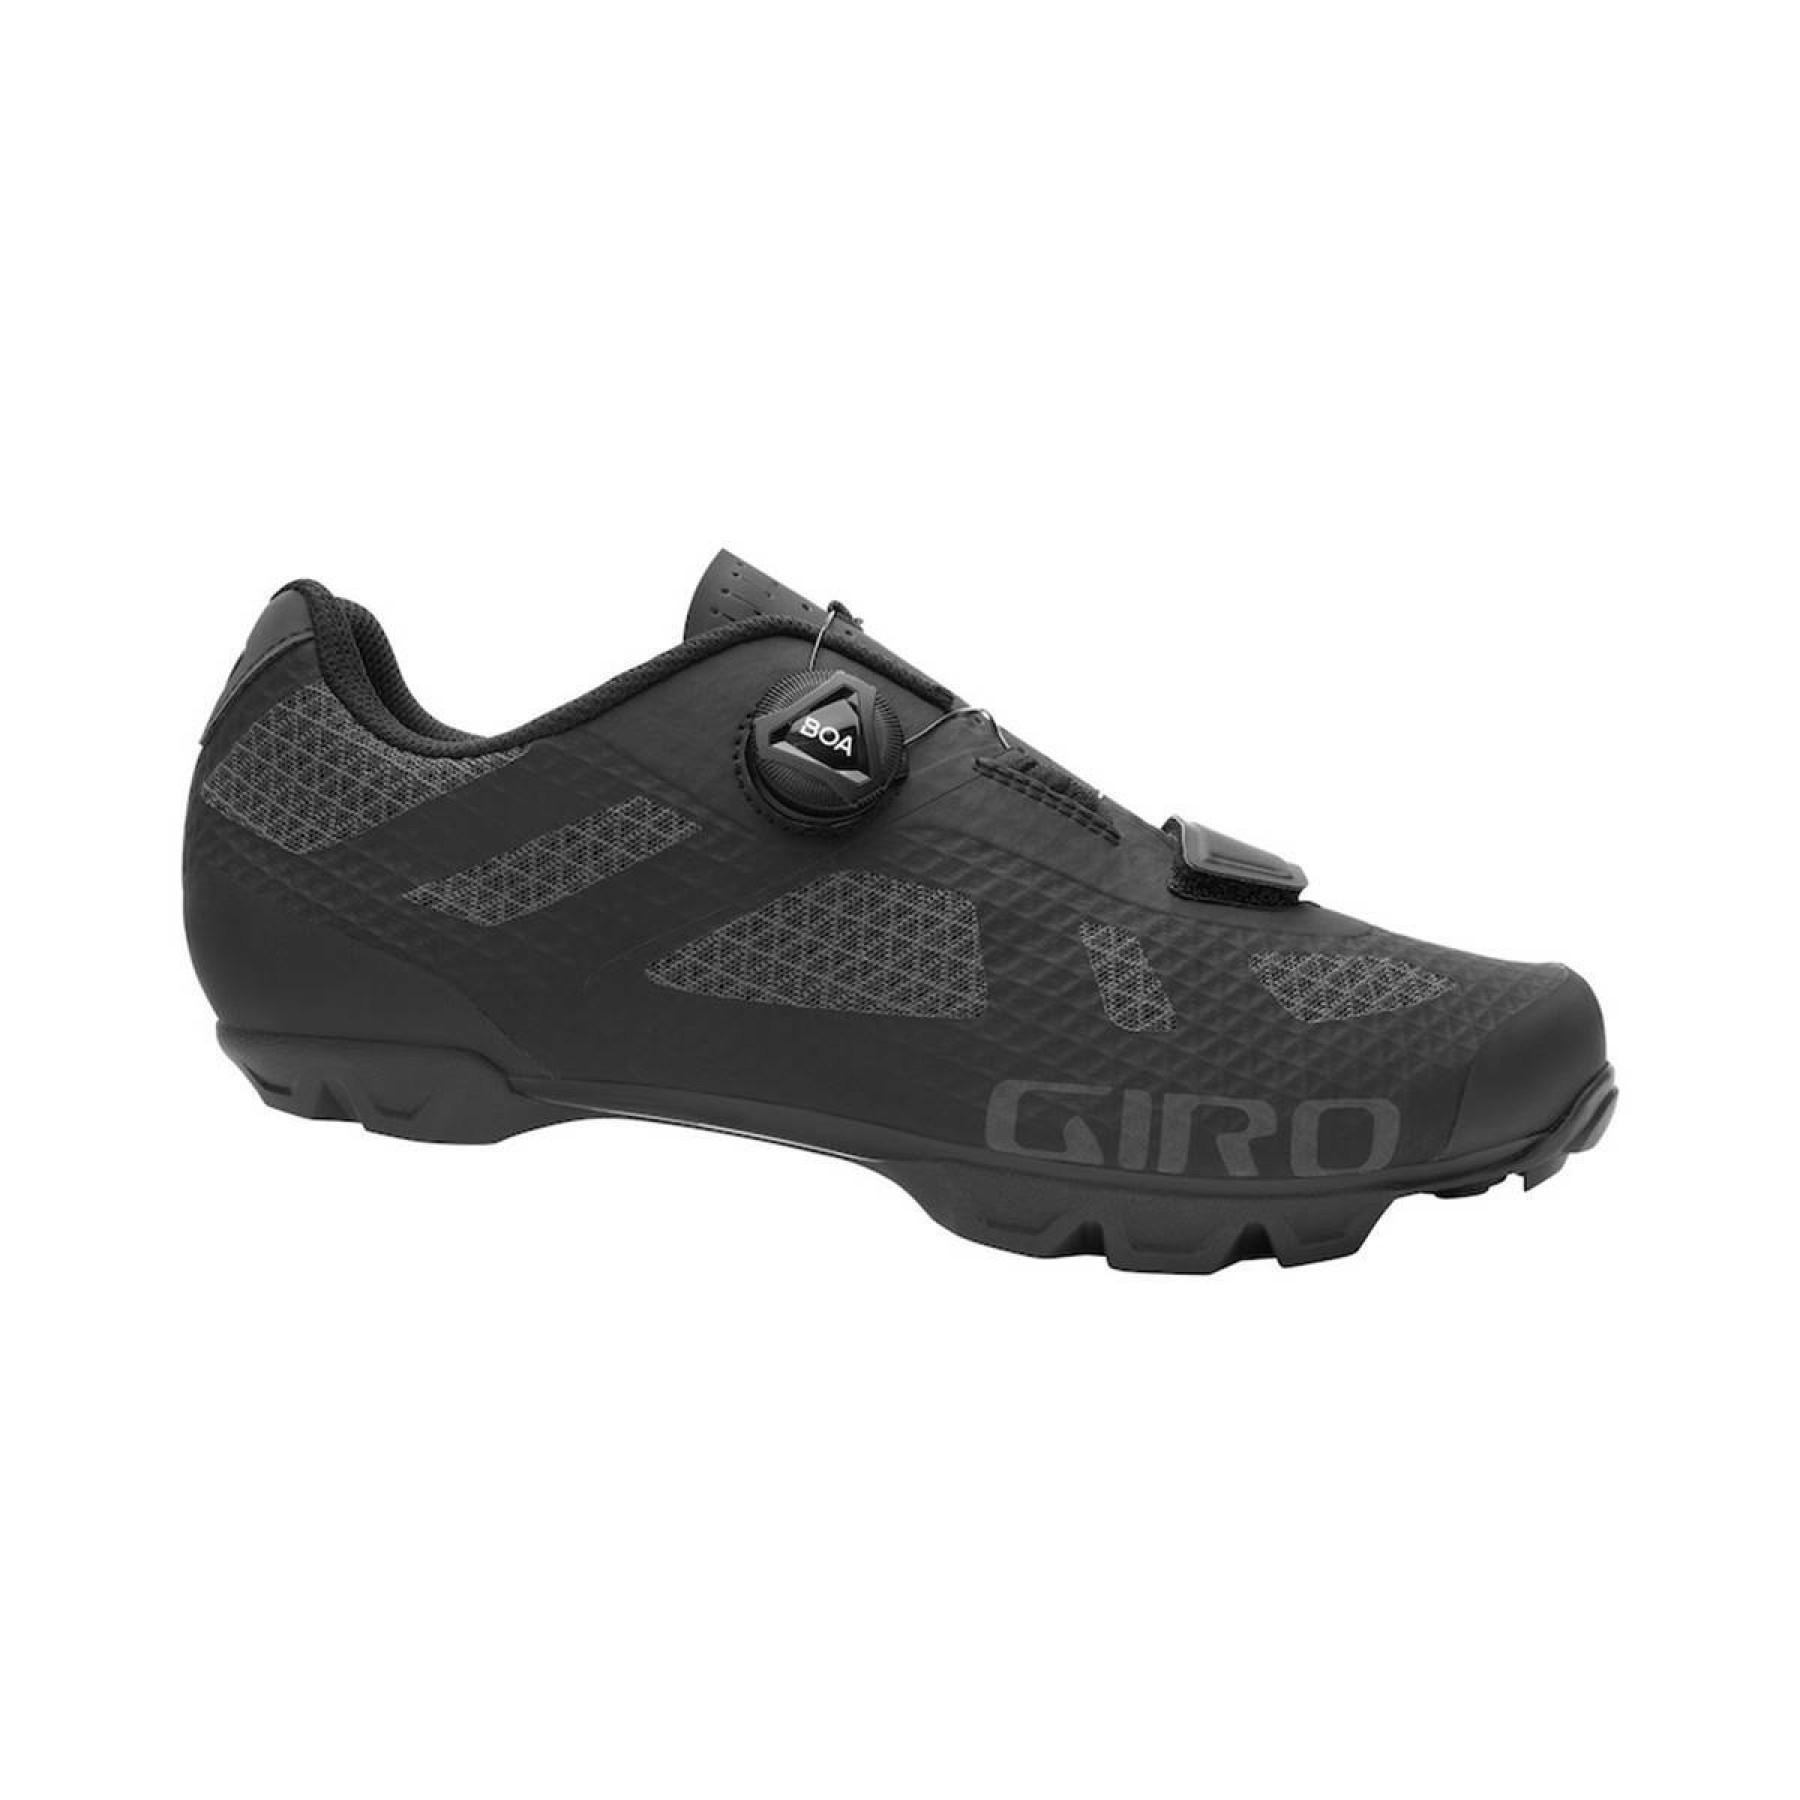 Schuhe Giro Rincon